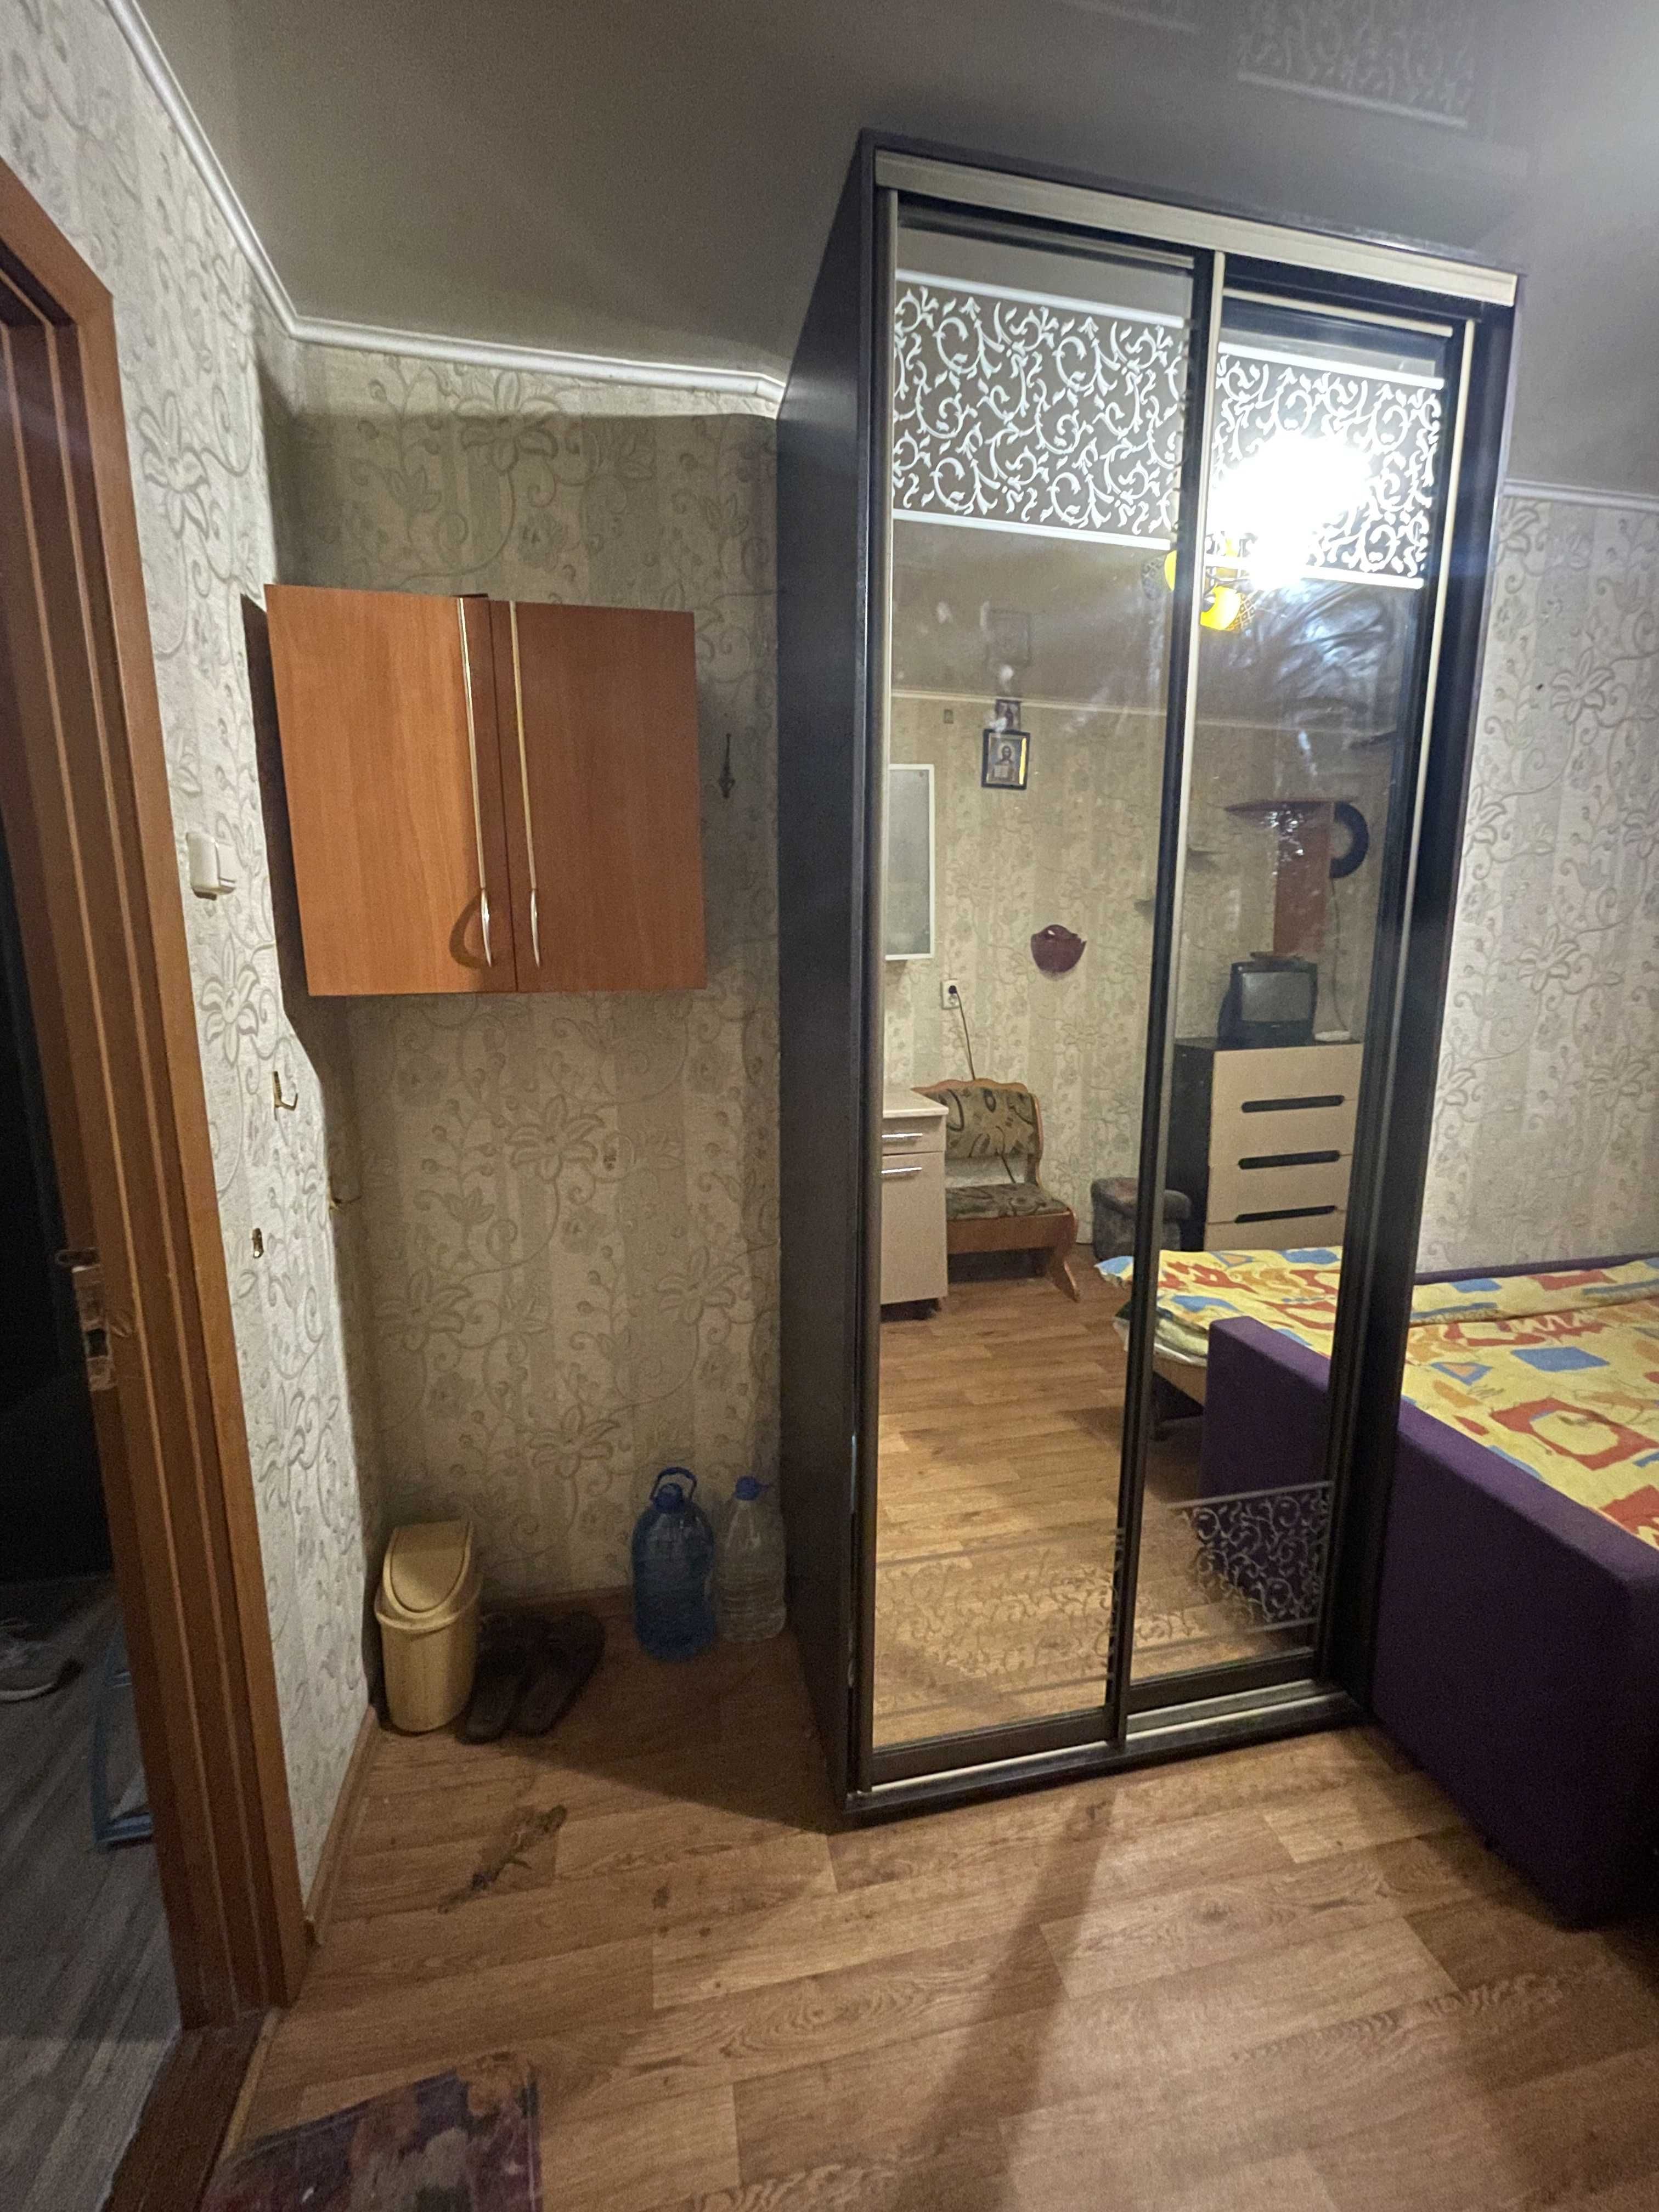 Продам комнату в коммуне  возле парка Горького и рынка